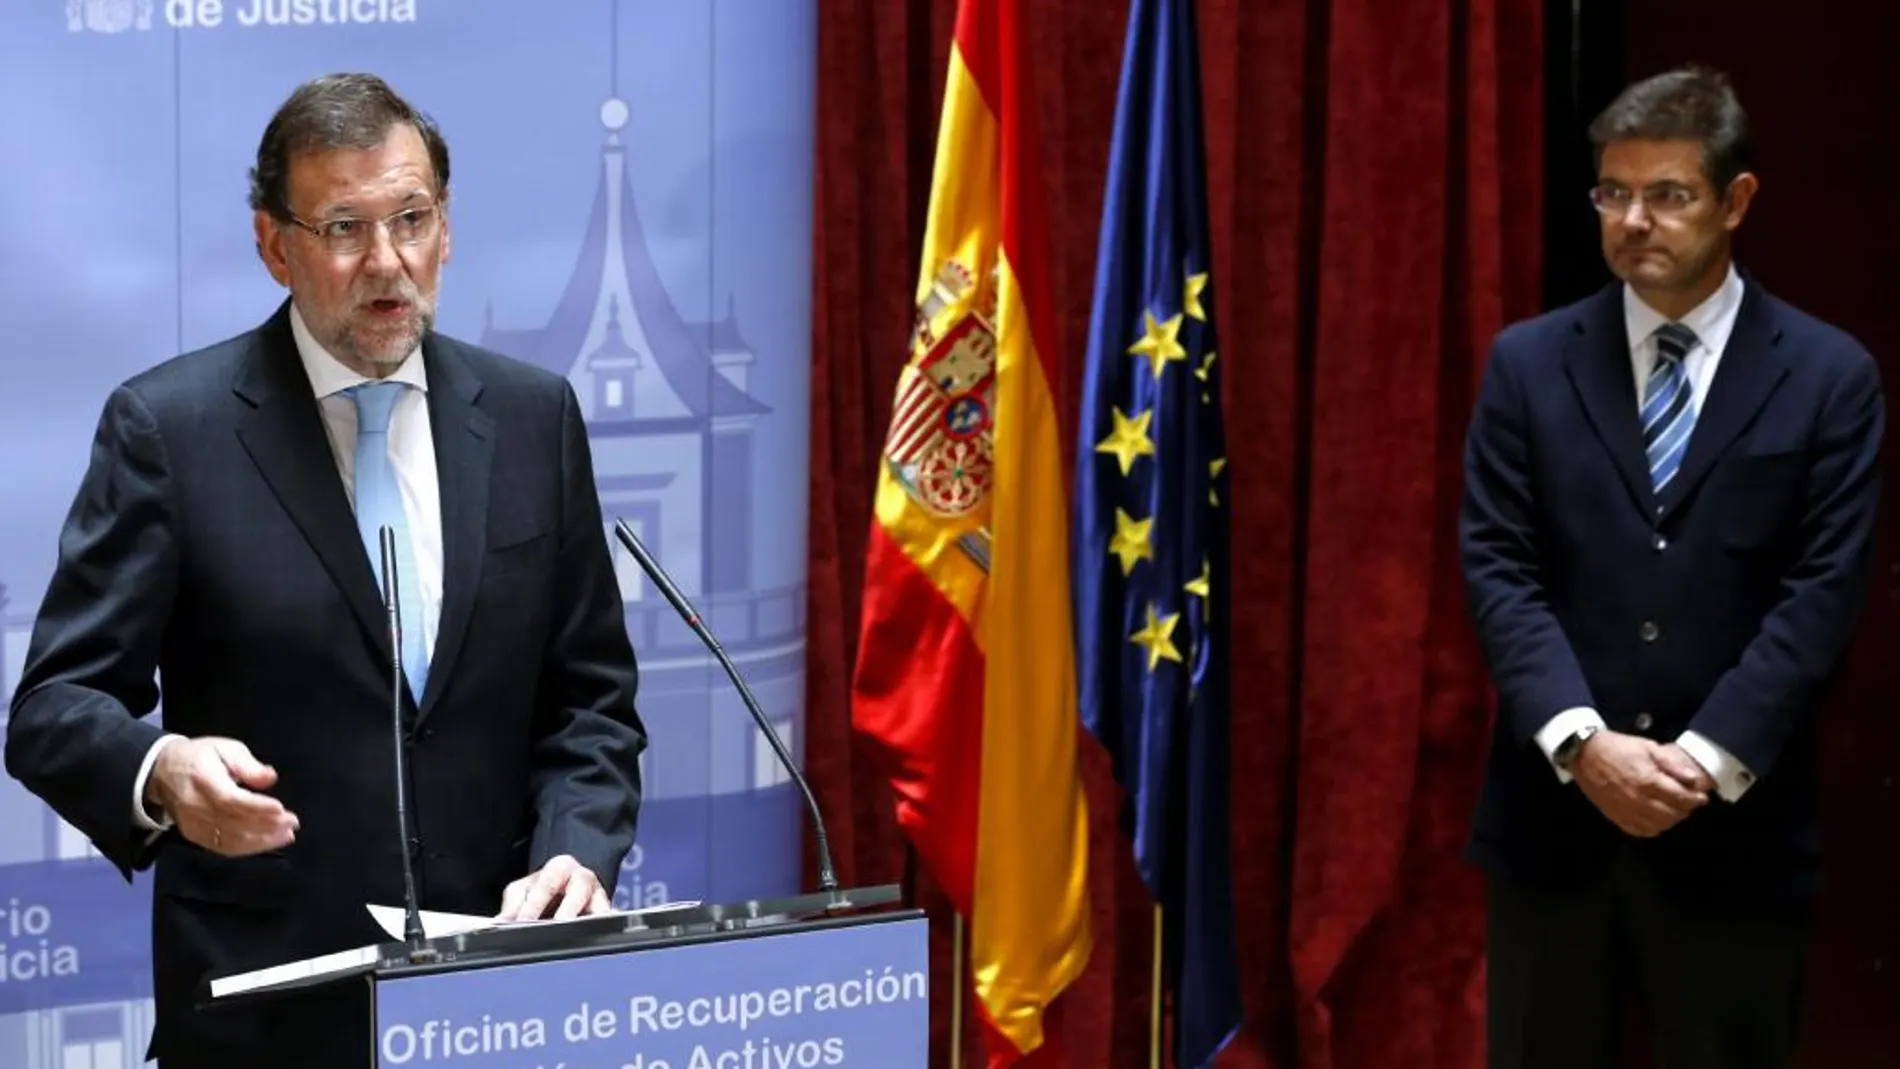 El presidente del Gobierno, Mariano Rajoy, durante su intervención en la inauguración de la Oficina de Recuperación y Gestión de Activos (ORA).